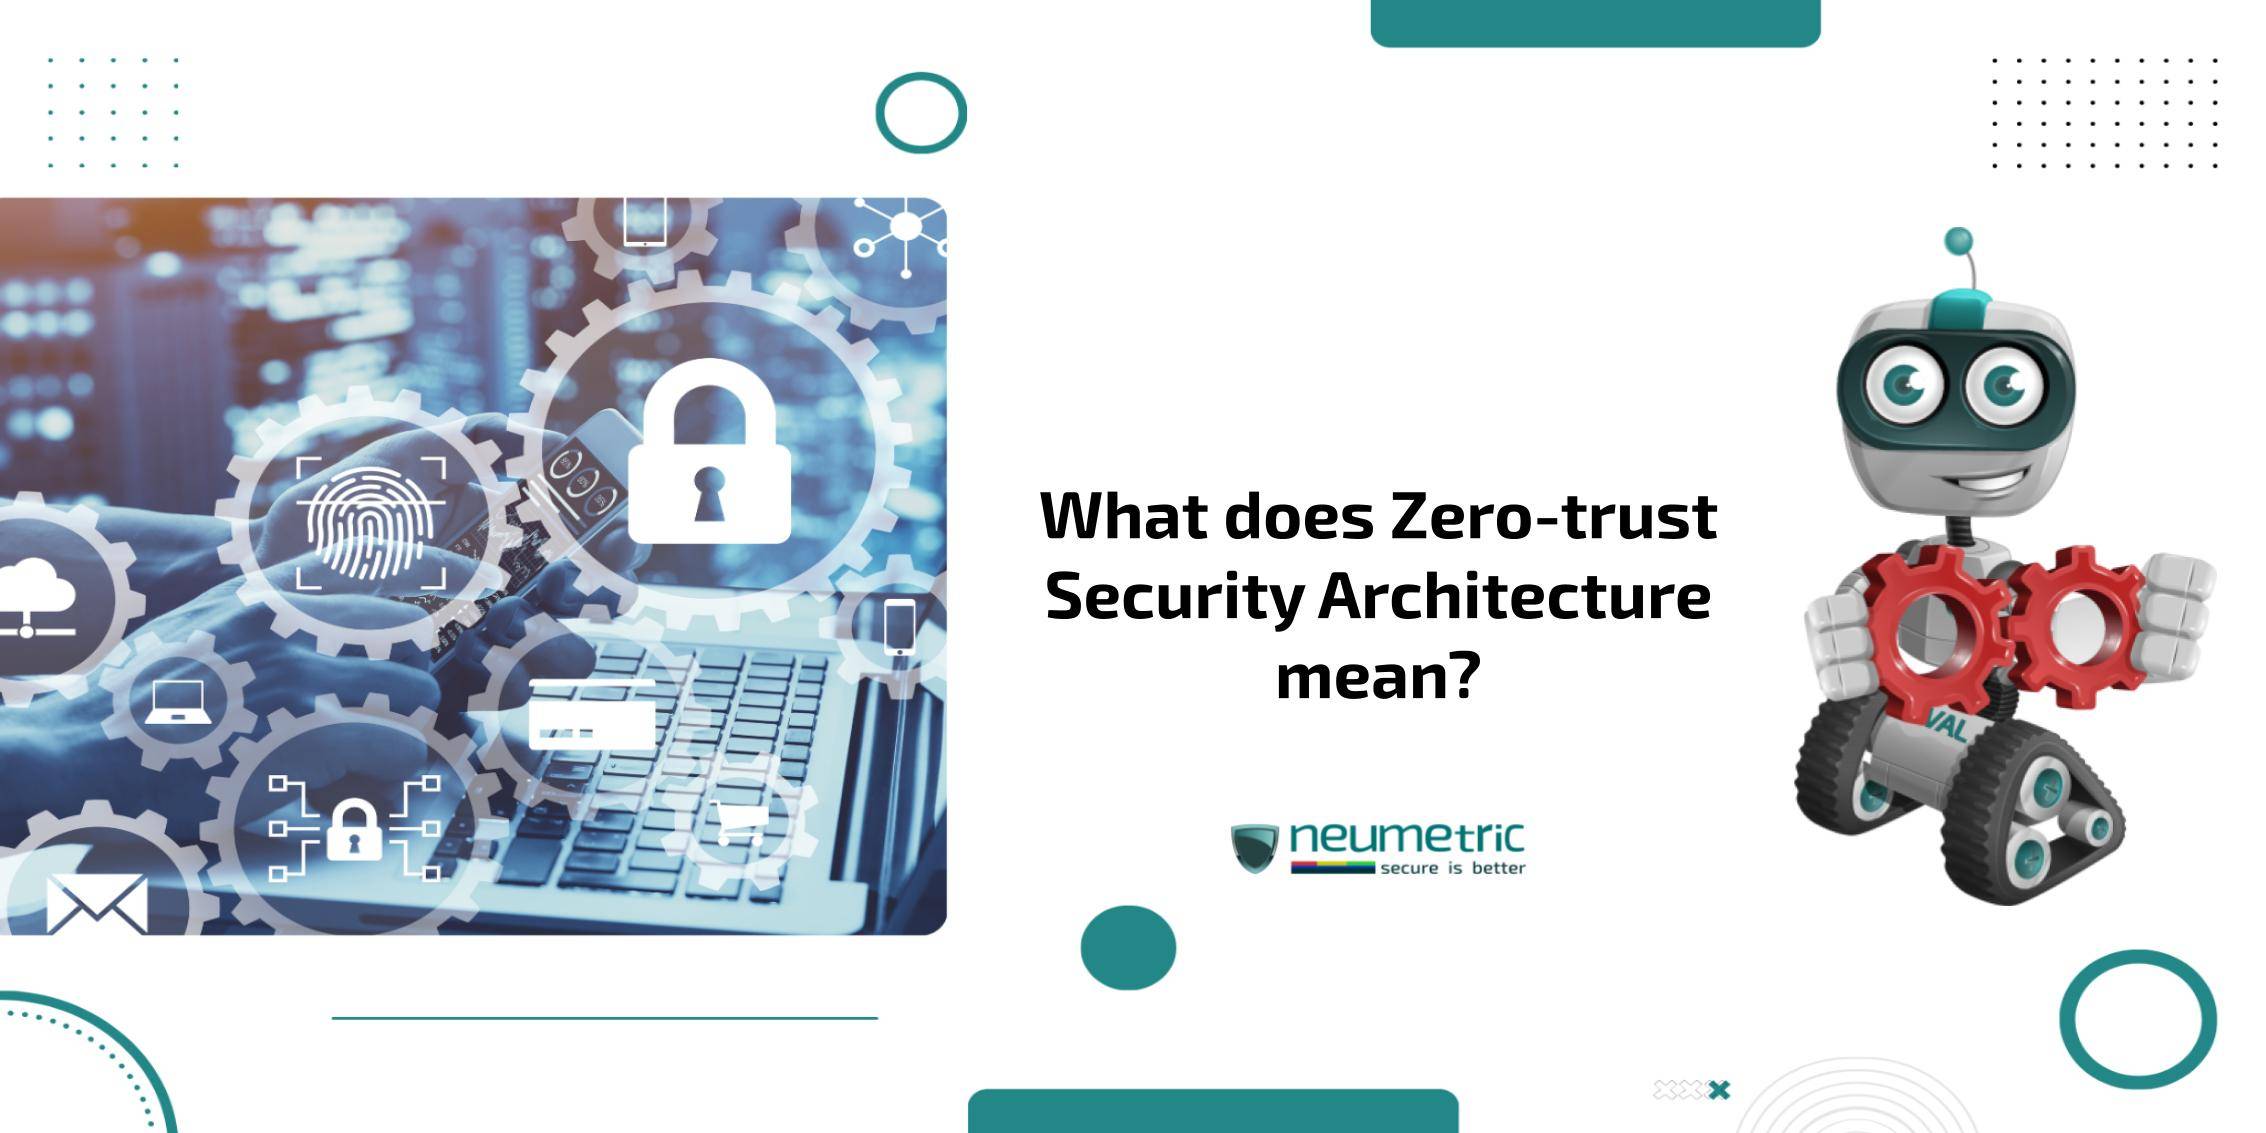 Zero-trust security architectures